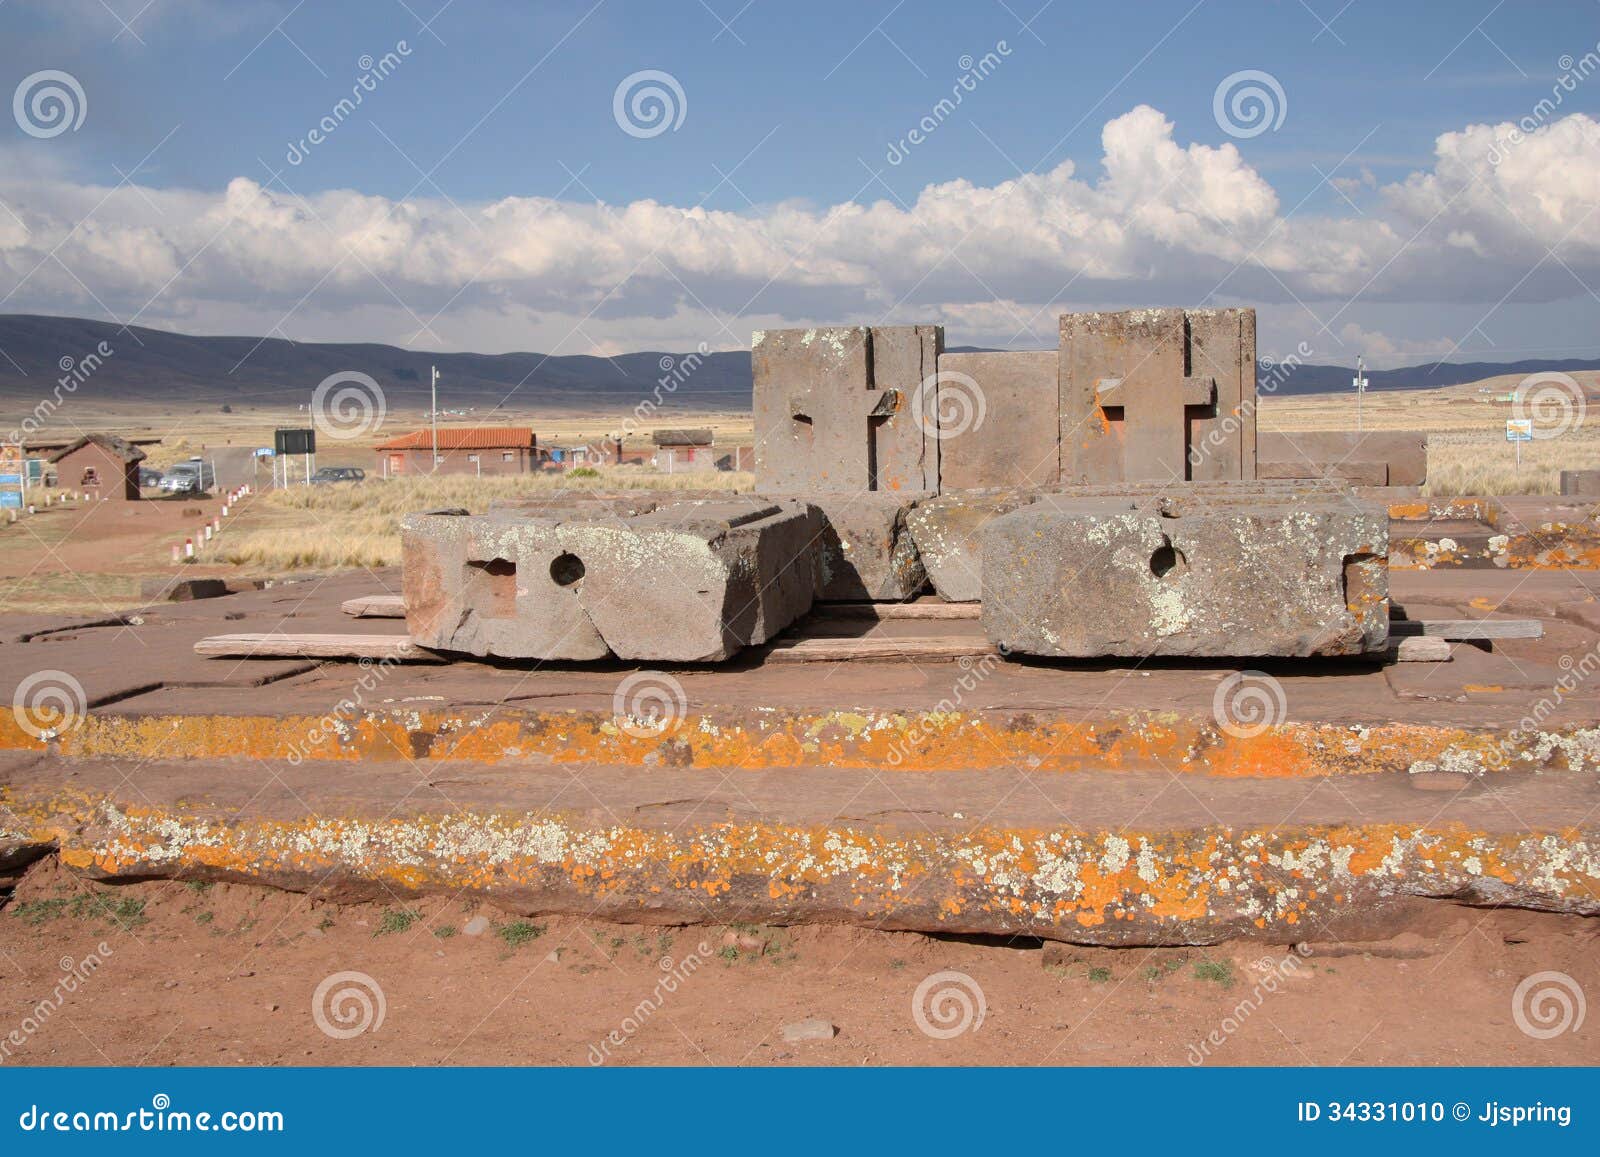 megalithic stone complex puma punku of tiwanaku ci